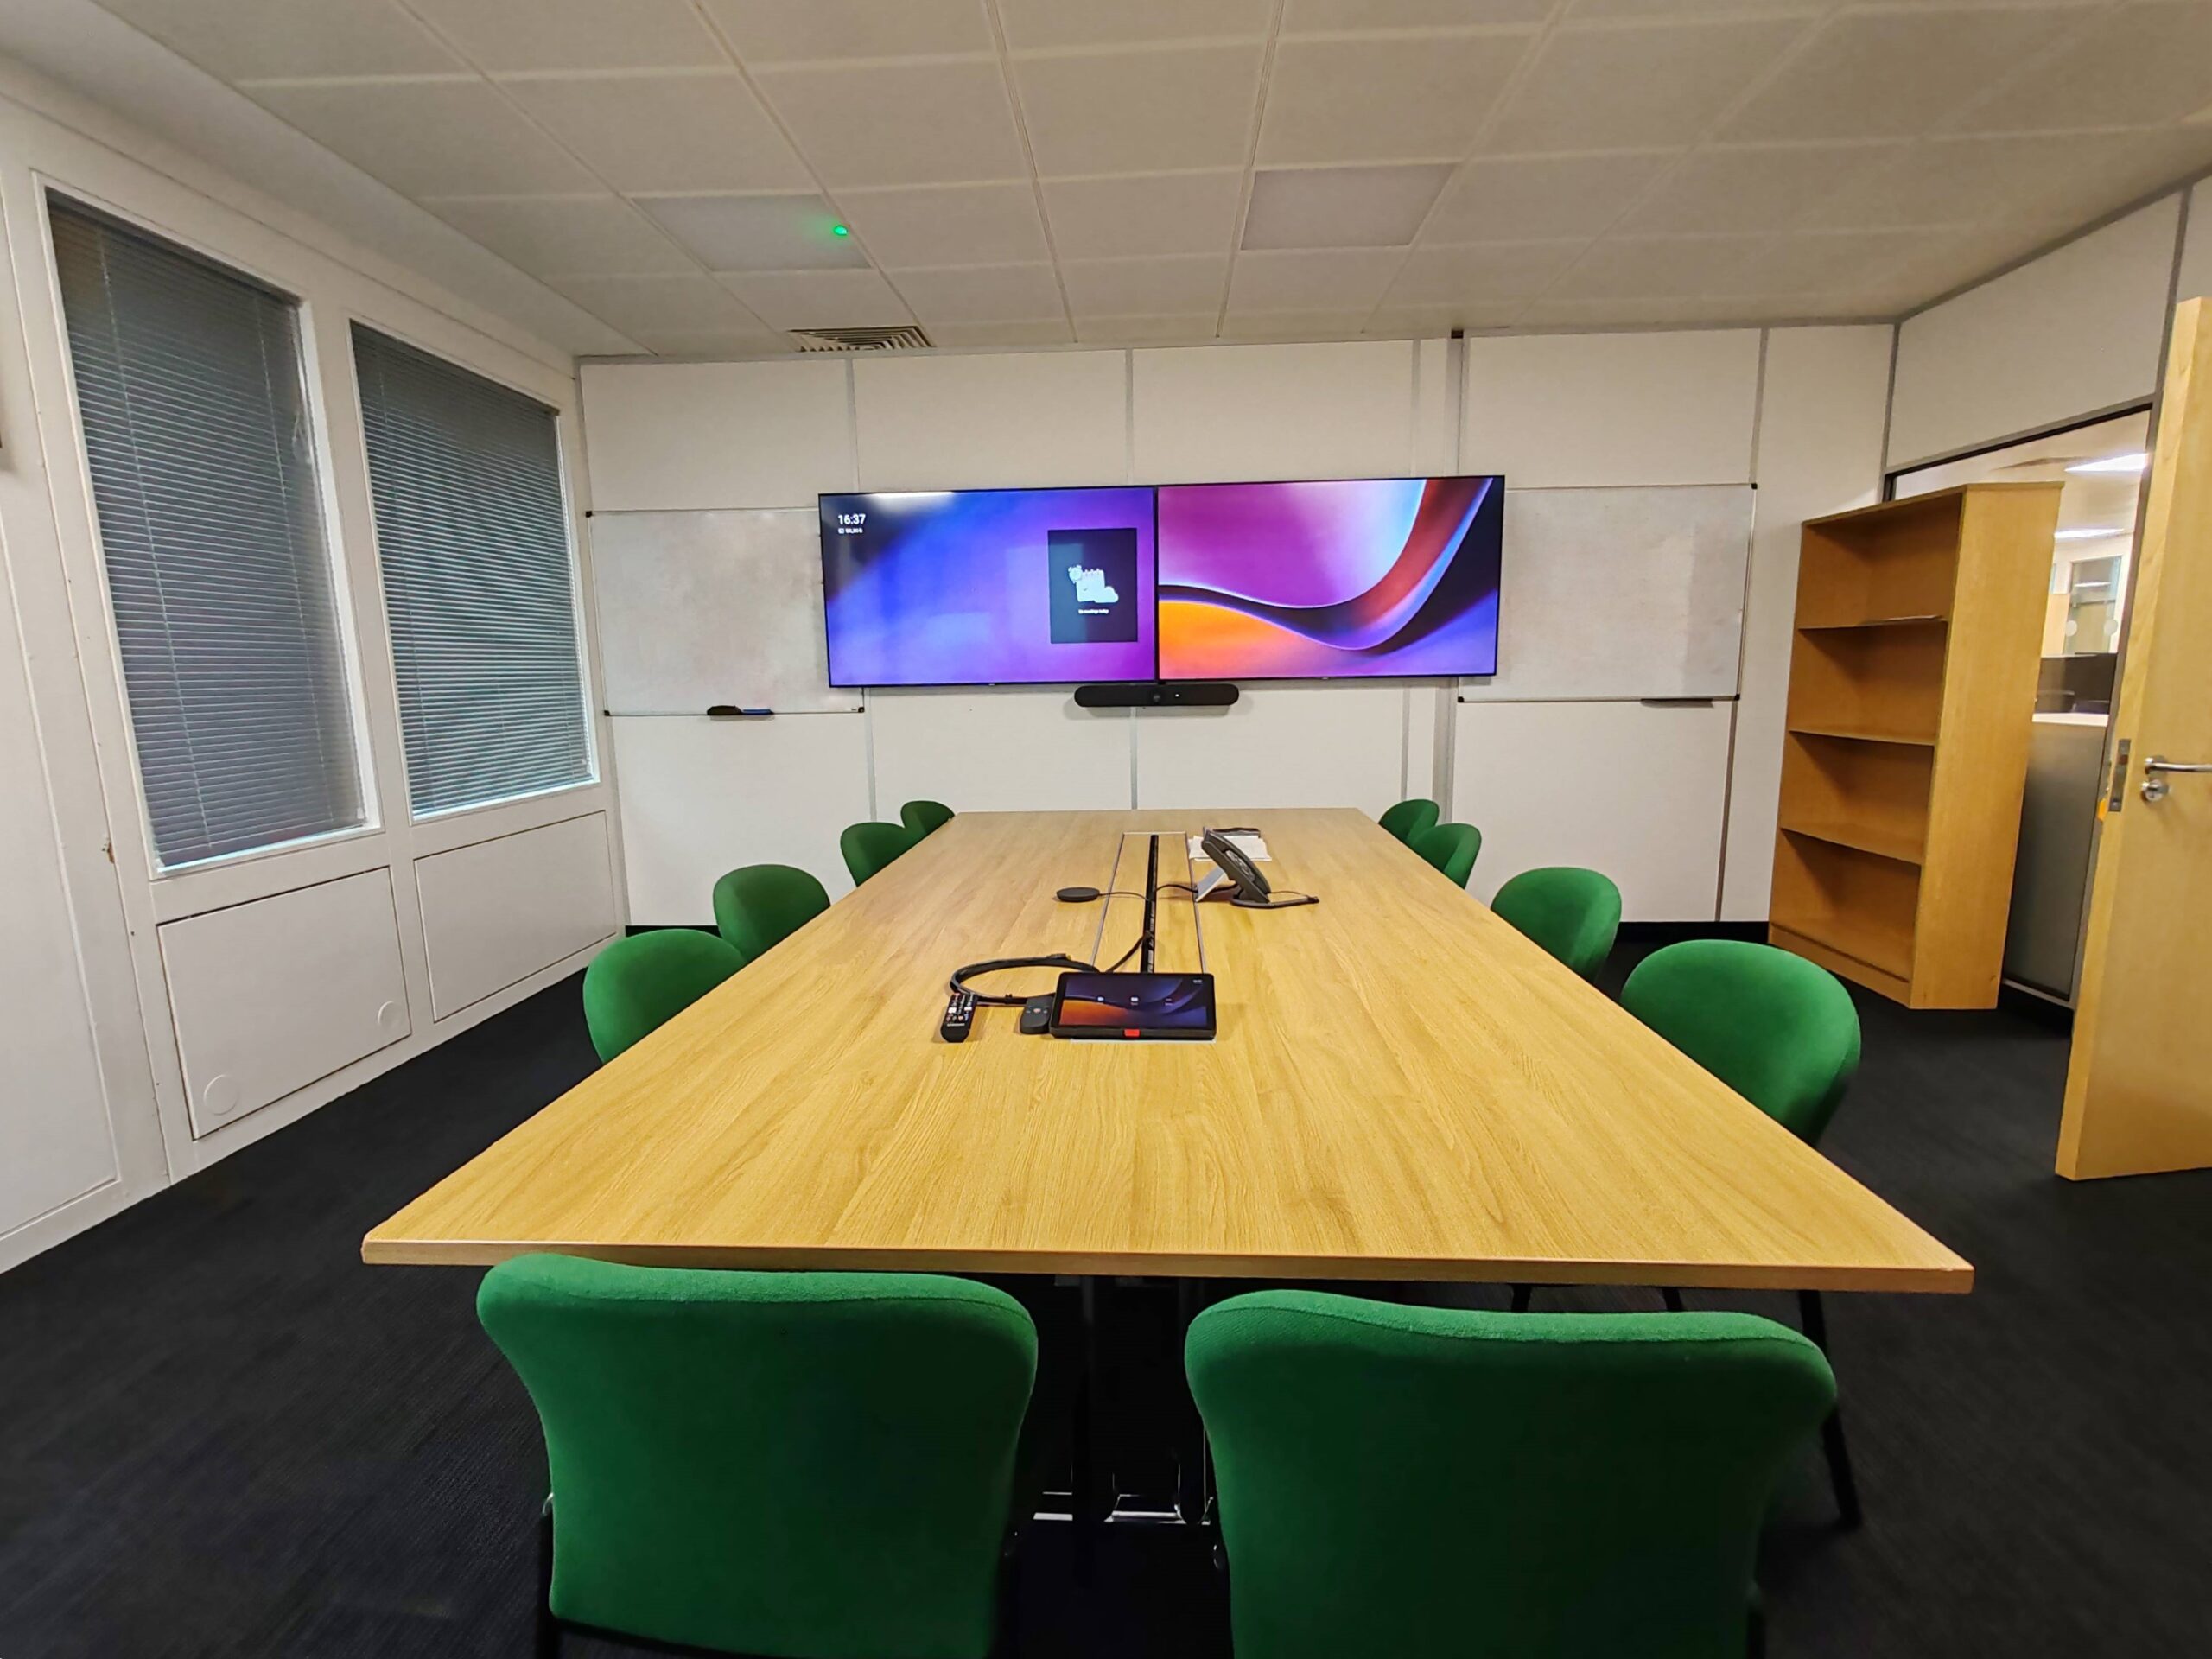 Microsoft Teams Rooms UK Project, AV Installation compny Runtech